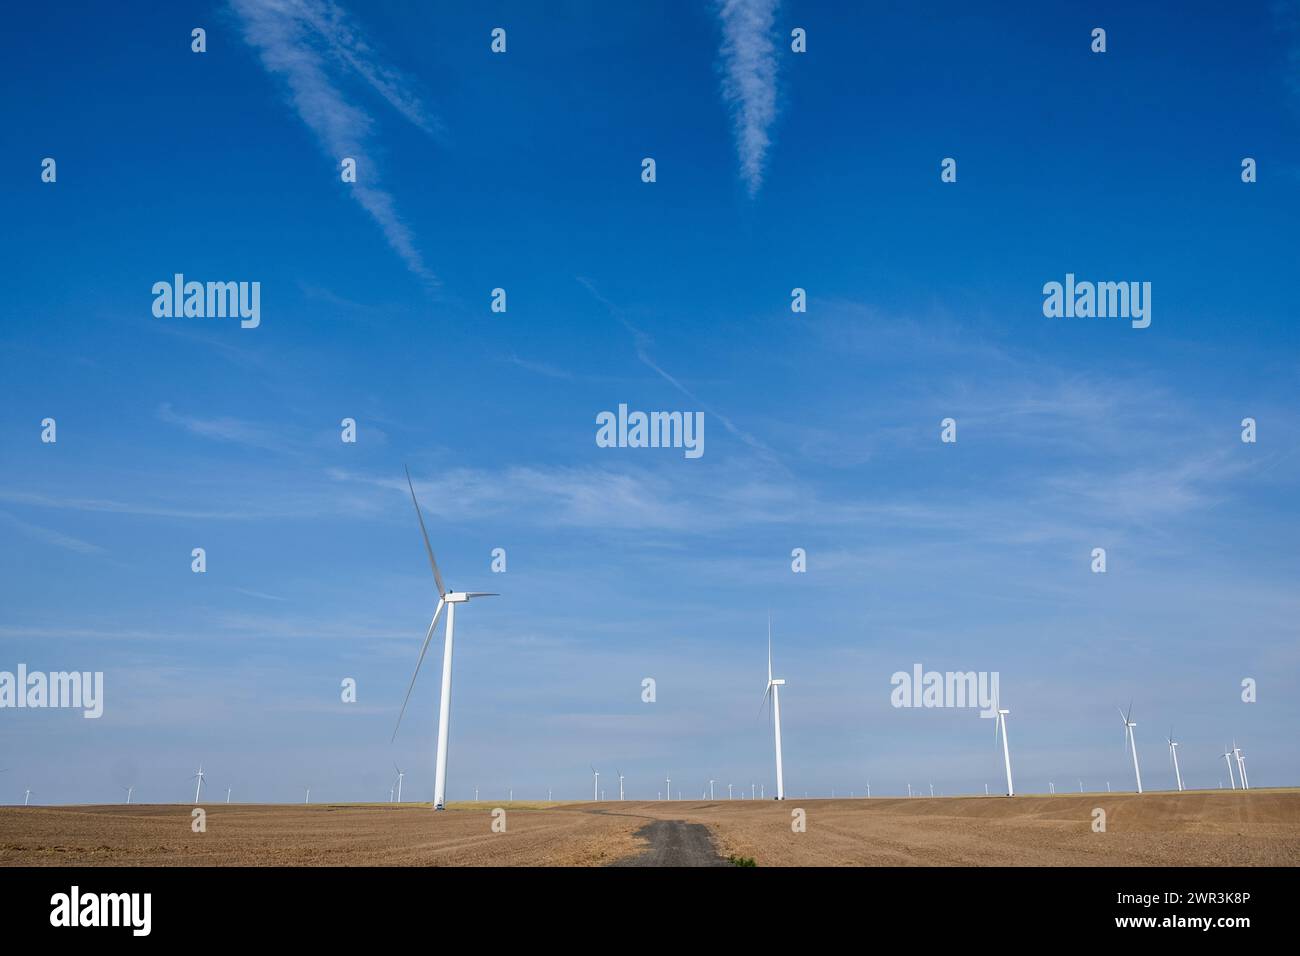 Le turbine eoliche si distinguono contro un cielo blu nello stato di Washington orientale, negli Stati Uniti, nel Pacifico nord-occidentale. Foto Stock